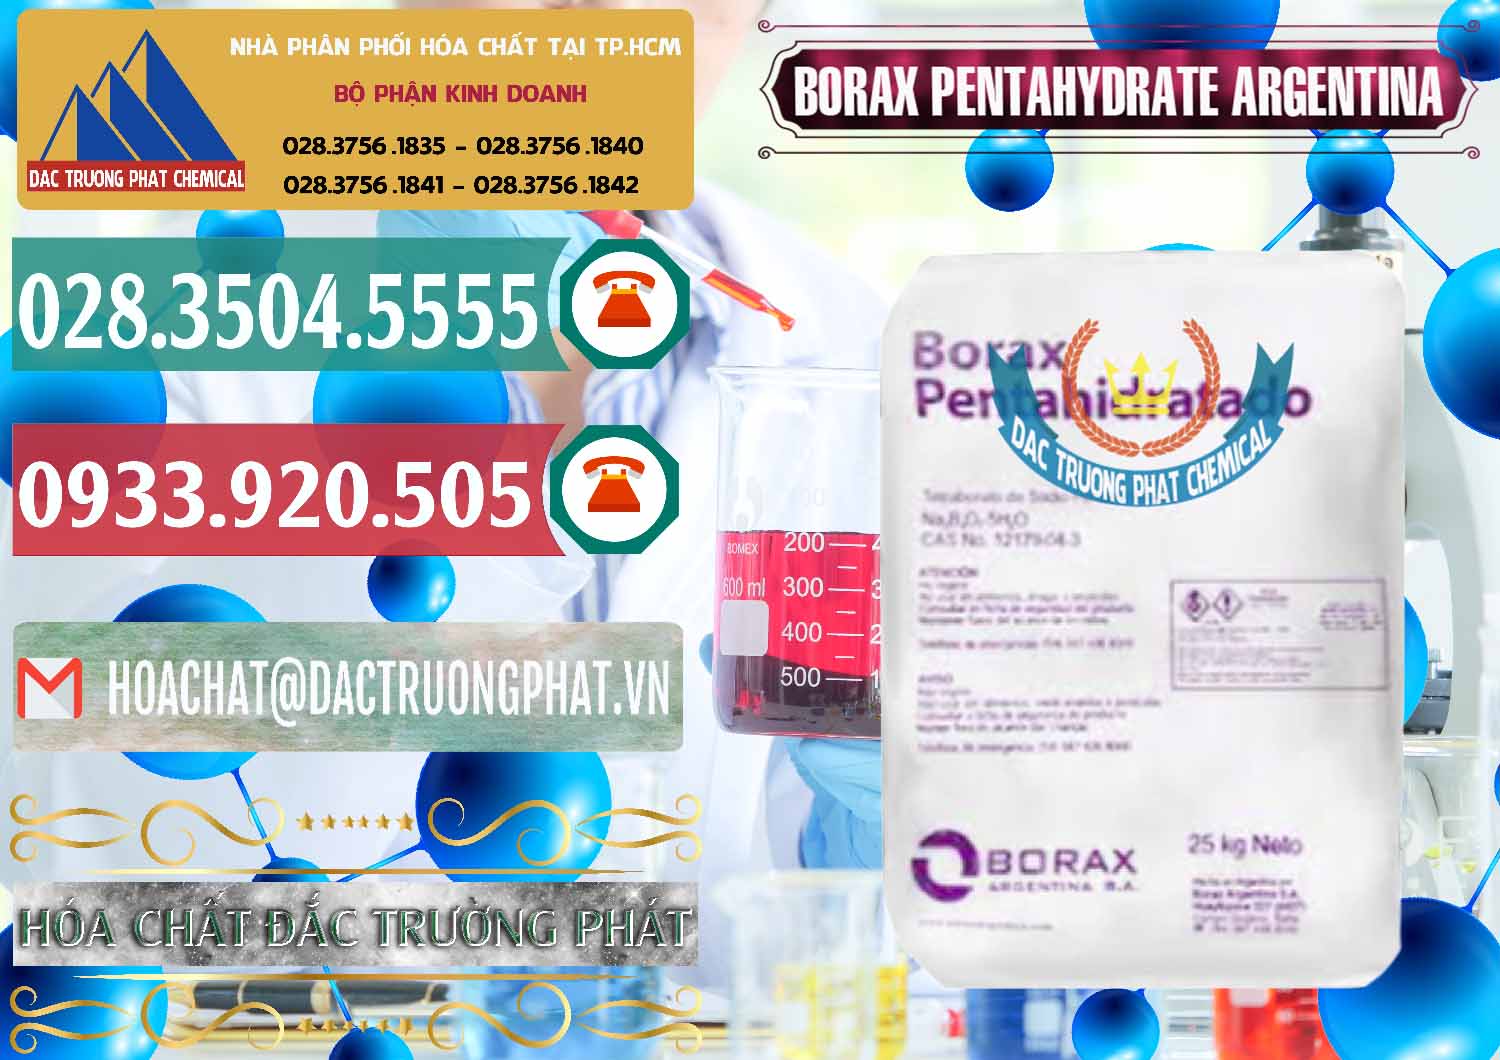 Công ty nhập khẩu ( bán ) Borax Pentahydrate Argentina - 0447 - Nhà cung ứng & phân phối hóa chất tại TP.HCM - muabanhoachat.vn